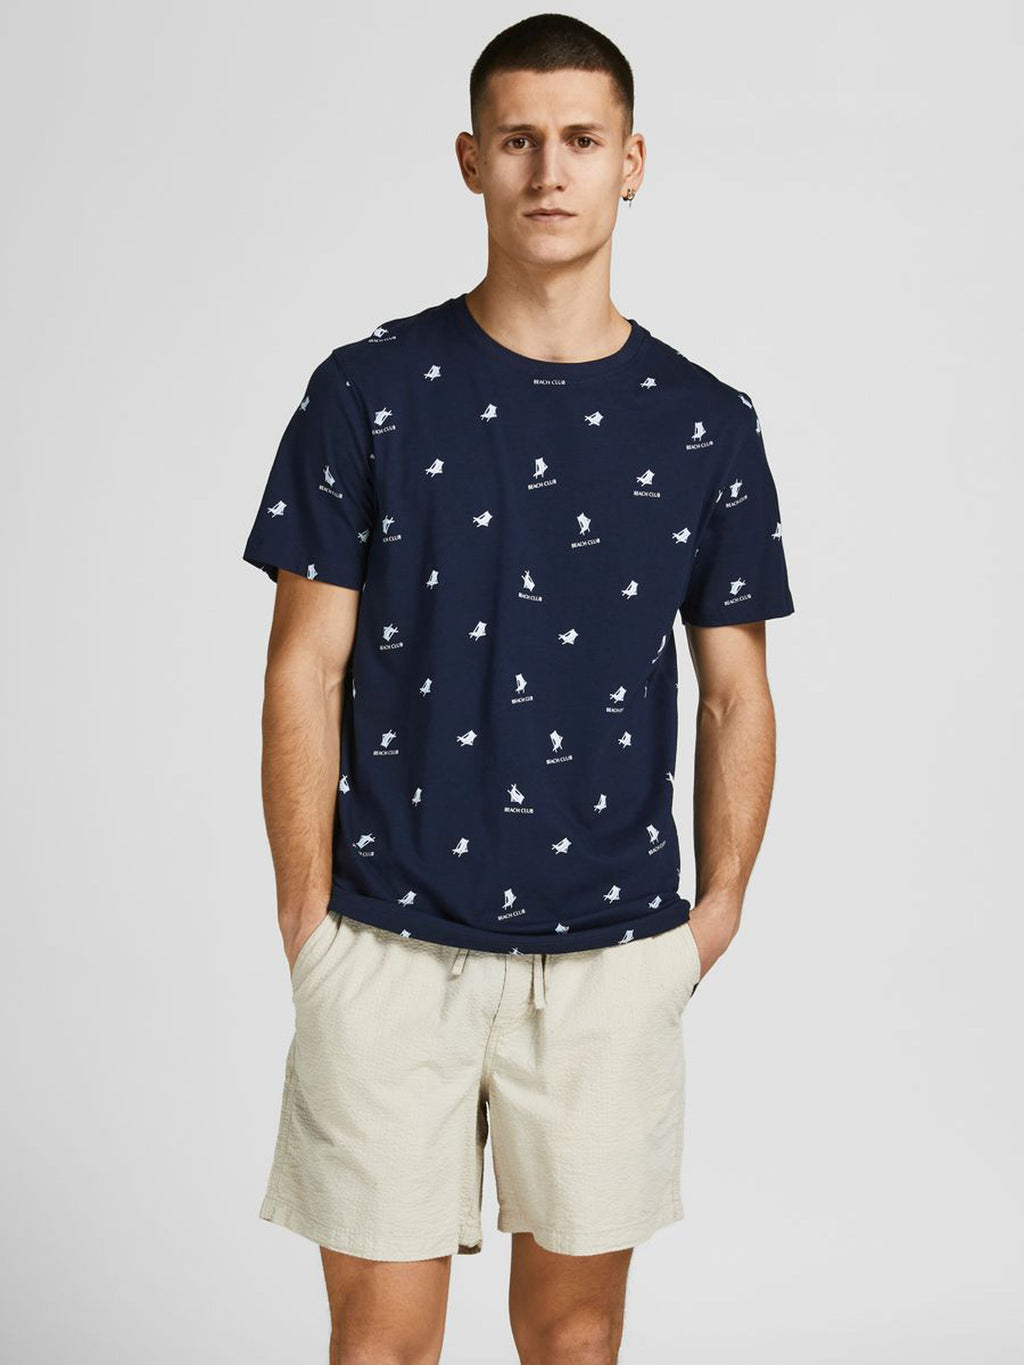 T-shirt Positano, navy blazer